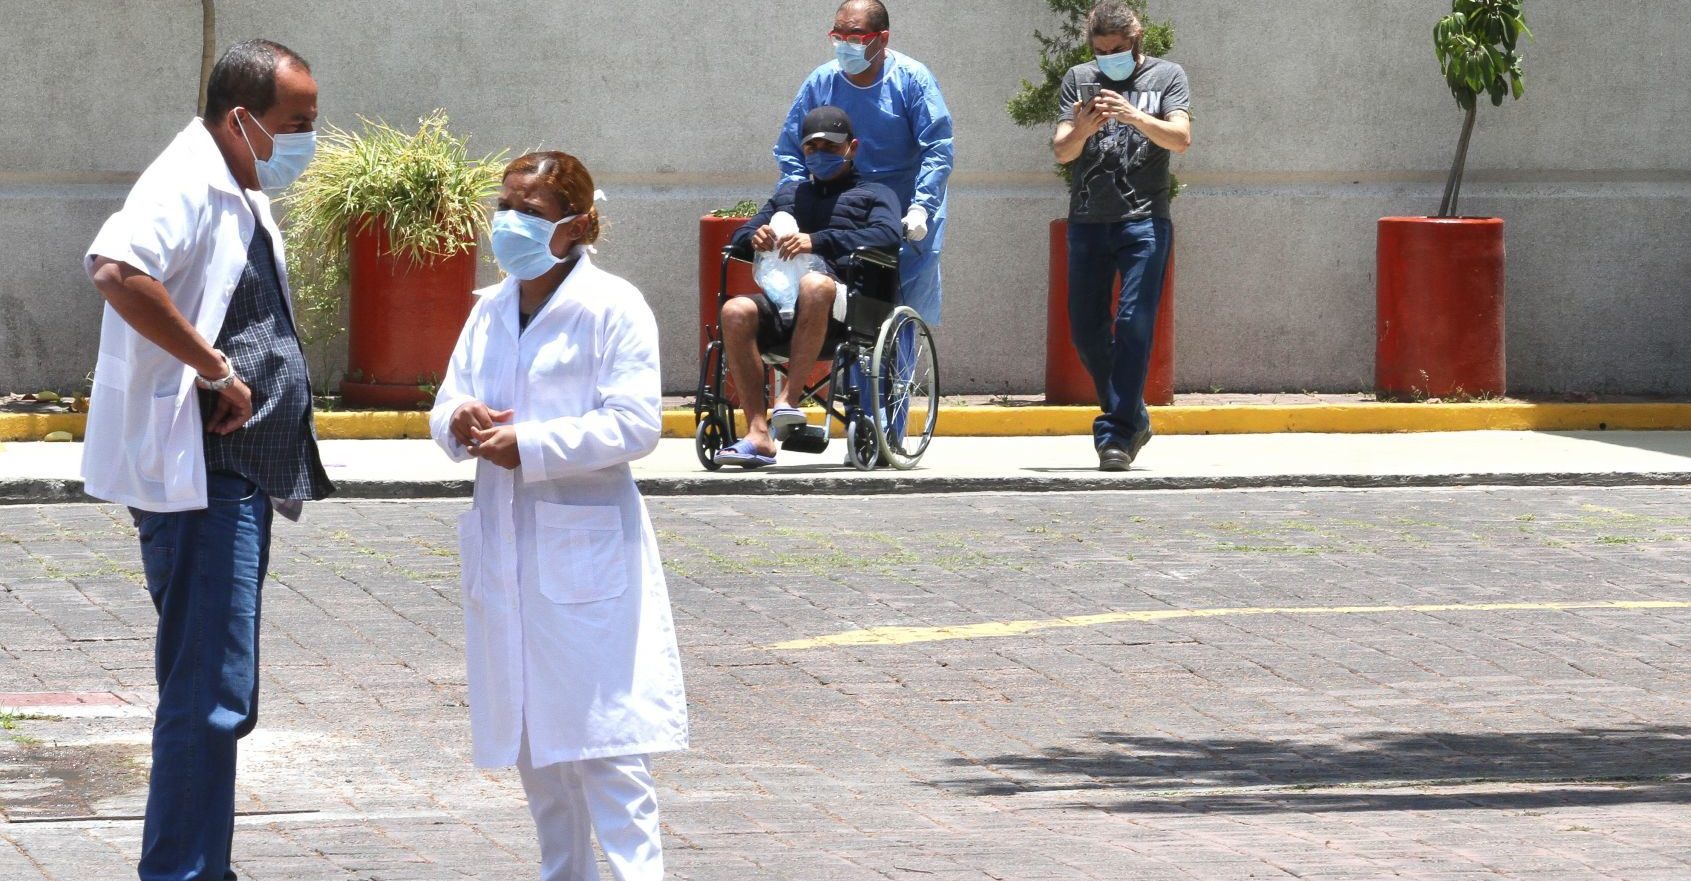 Médicos cubanos son explotados en misiones por el mundo: ONU